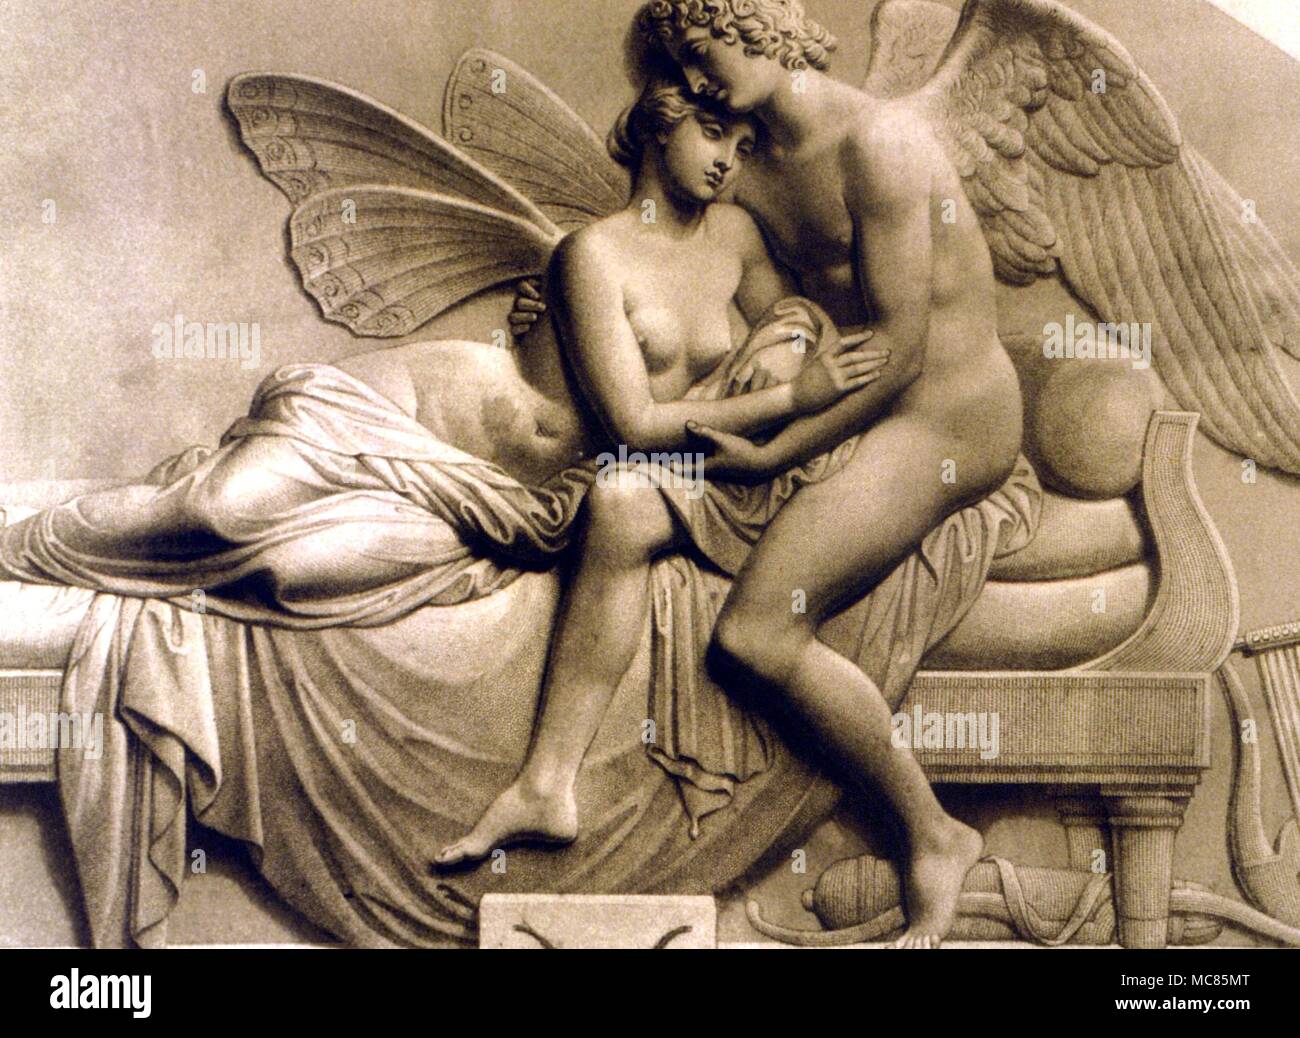 La mythologie grecque Amour et Psyché gravure par Roffe après le bas relief sculpture by Gibson de "Cupidon et Psyché', autrefois dans la collection de la reine Victoria Banque D'Images